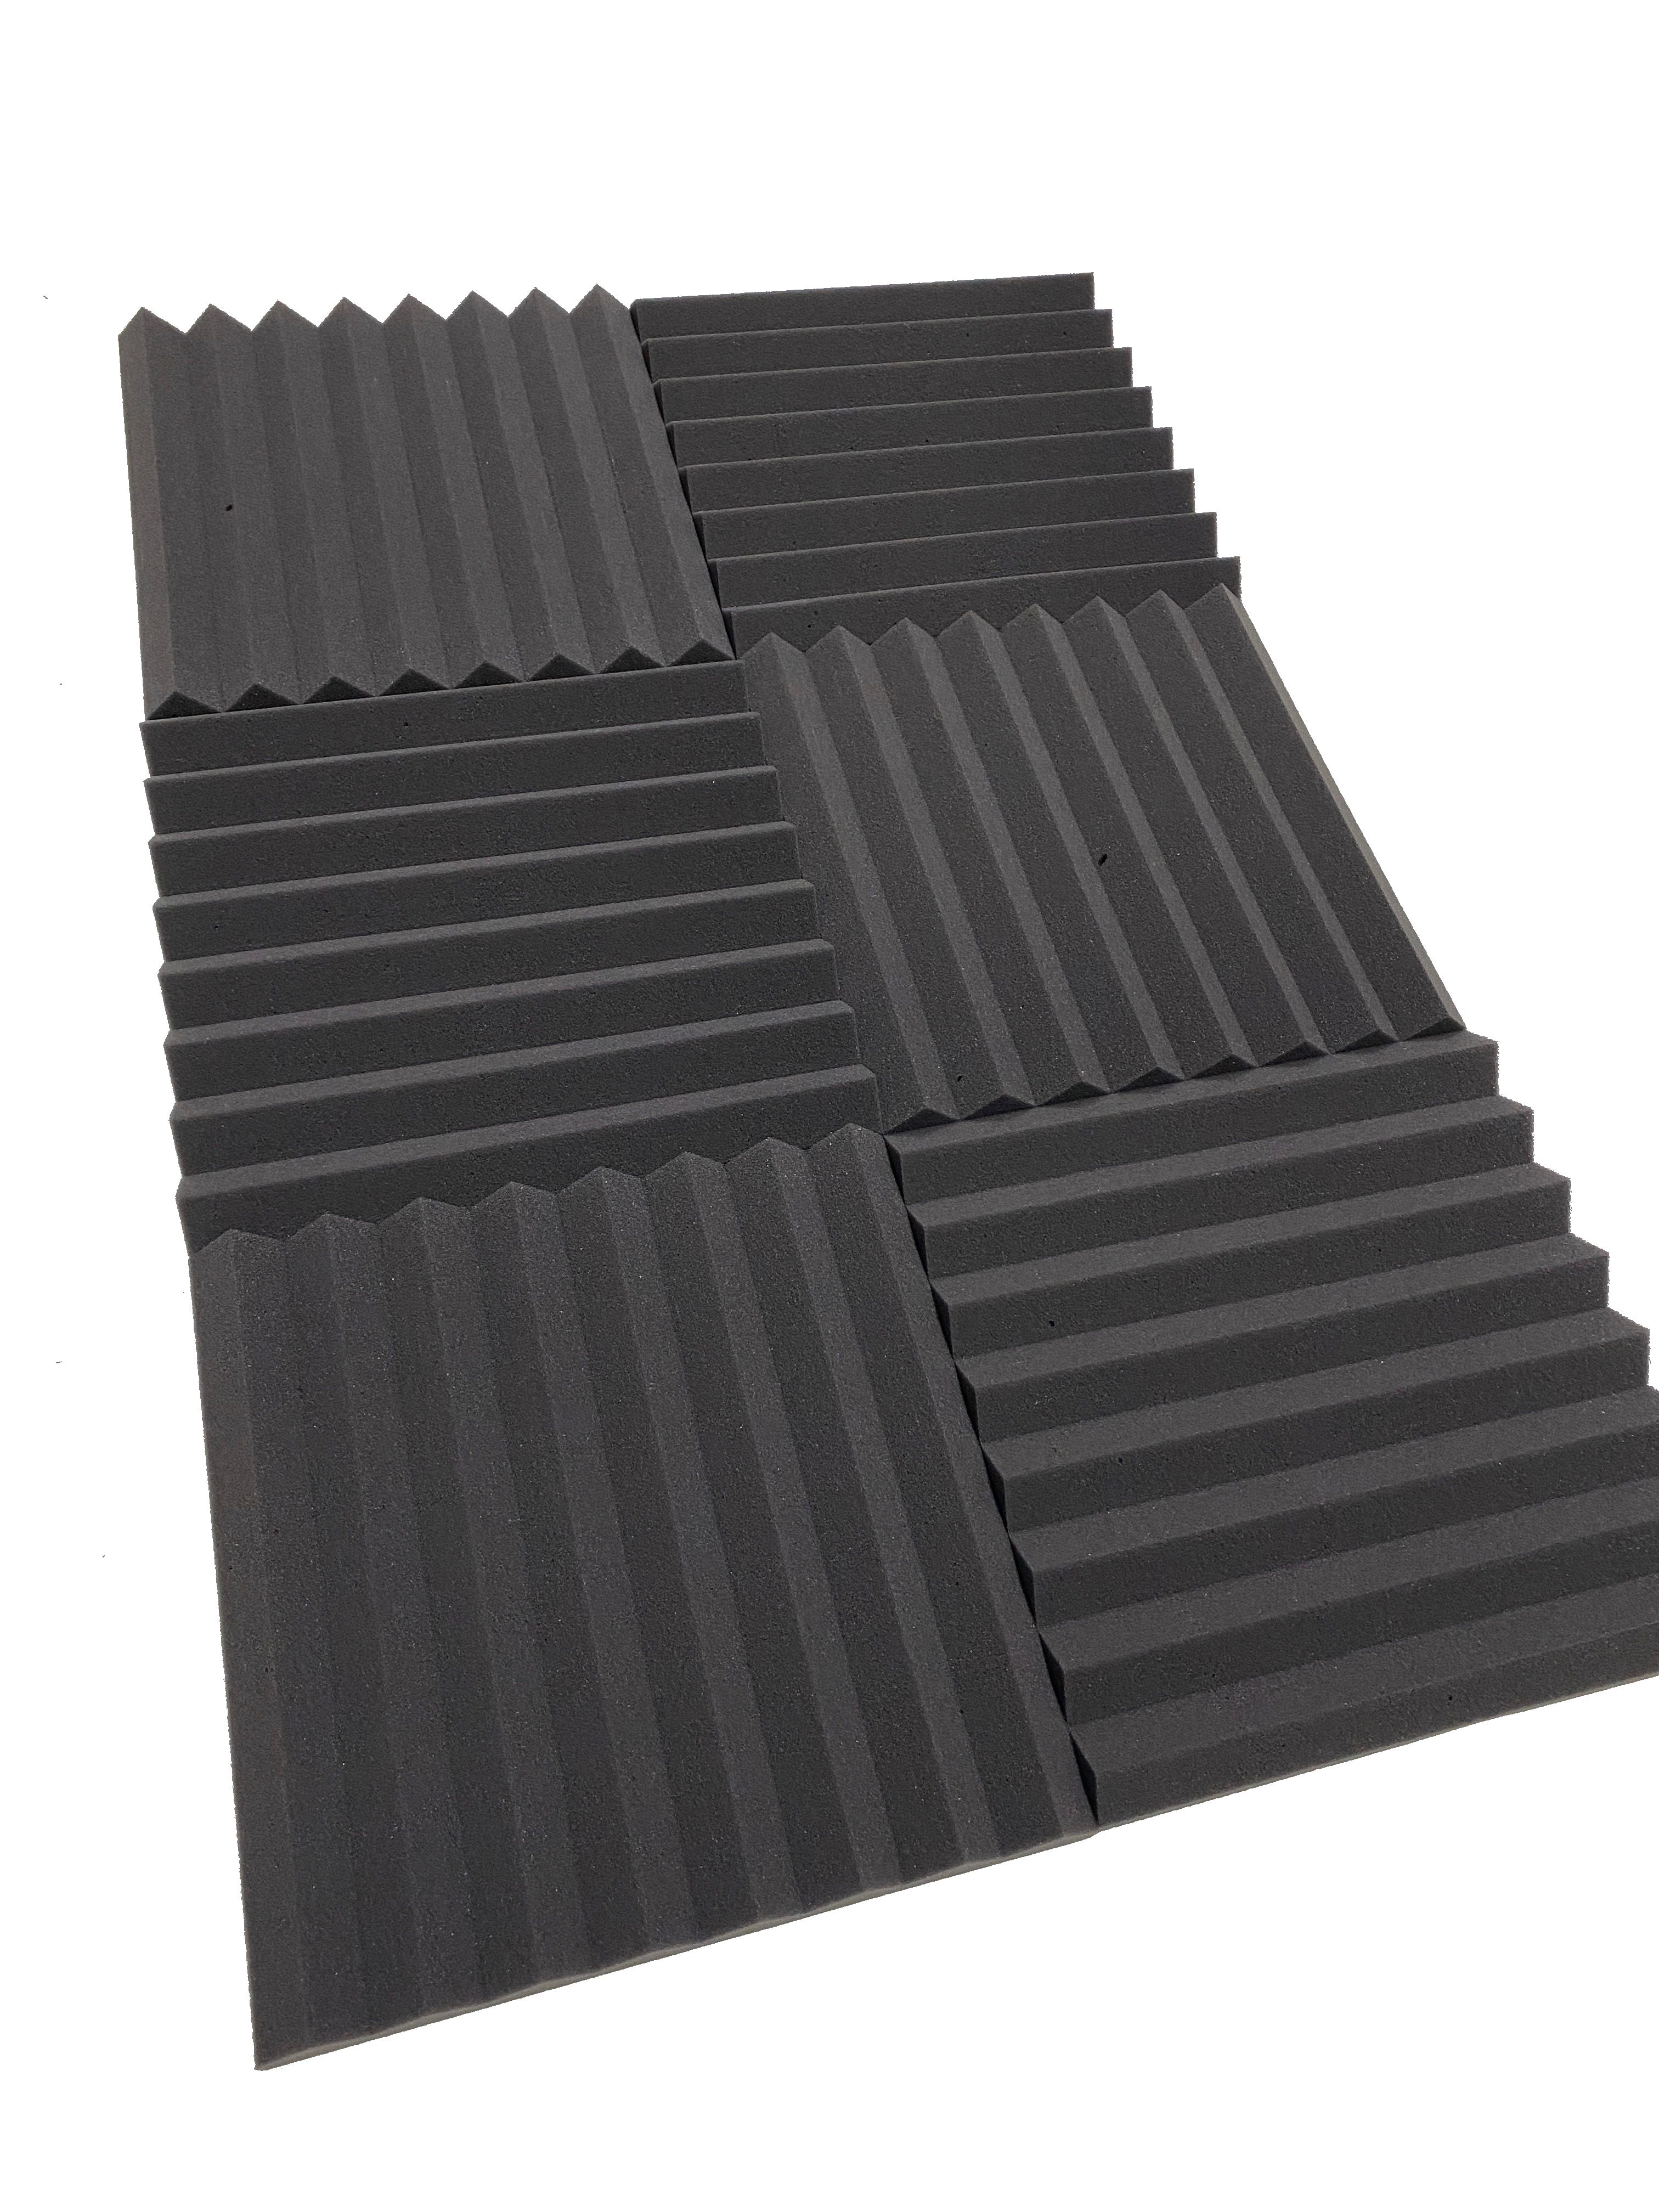 Kaufen dunkelgrau Wedge 12&quot; Acoustic Studio Foam Tile Pack - 24 Tiles, 2.2qm Coverage